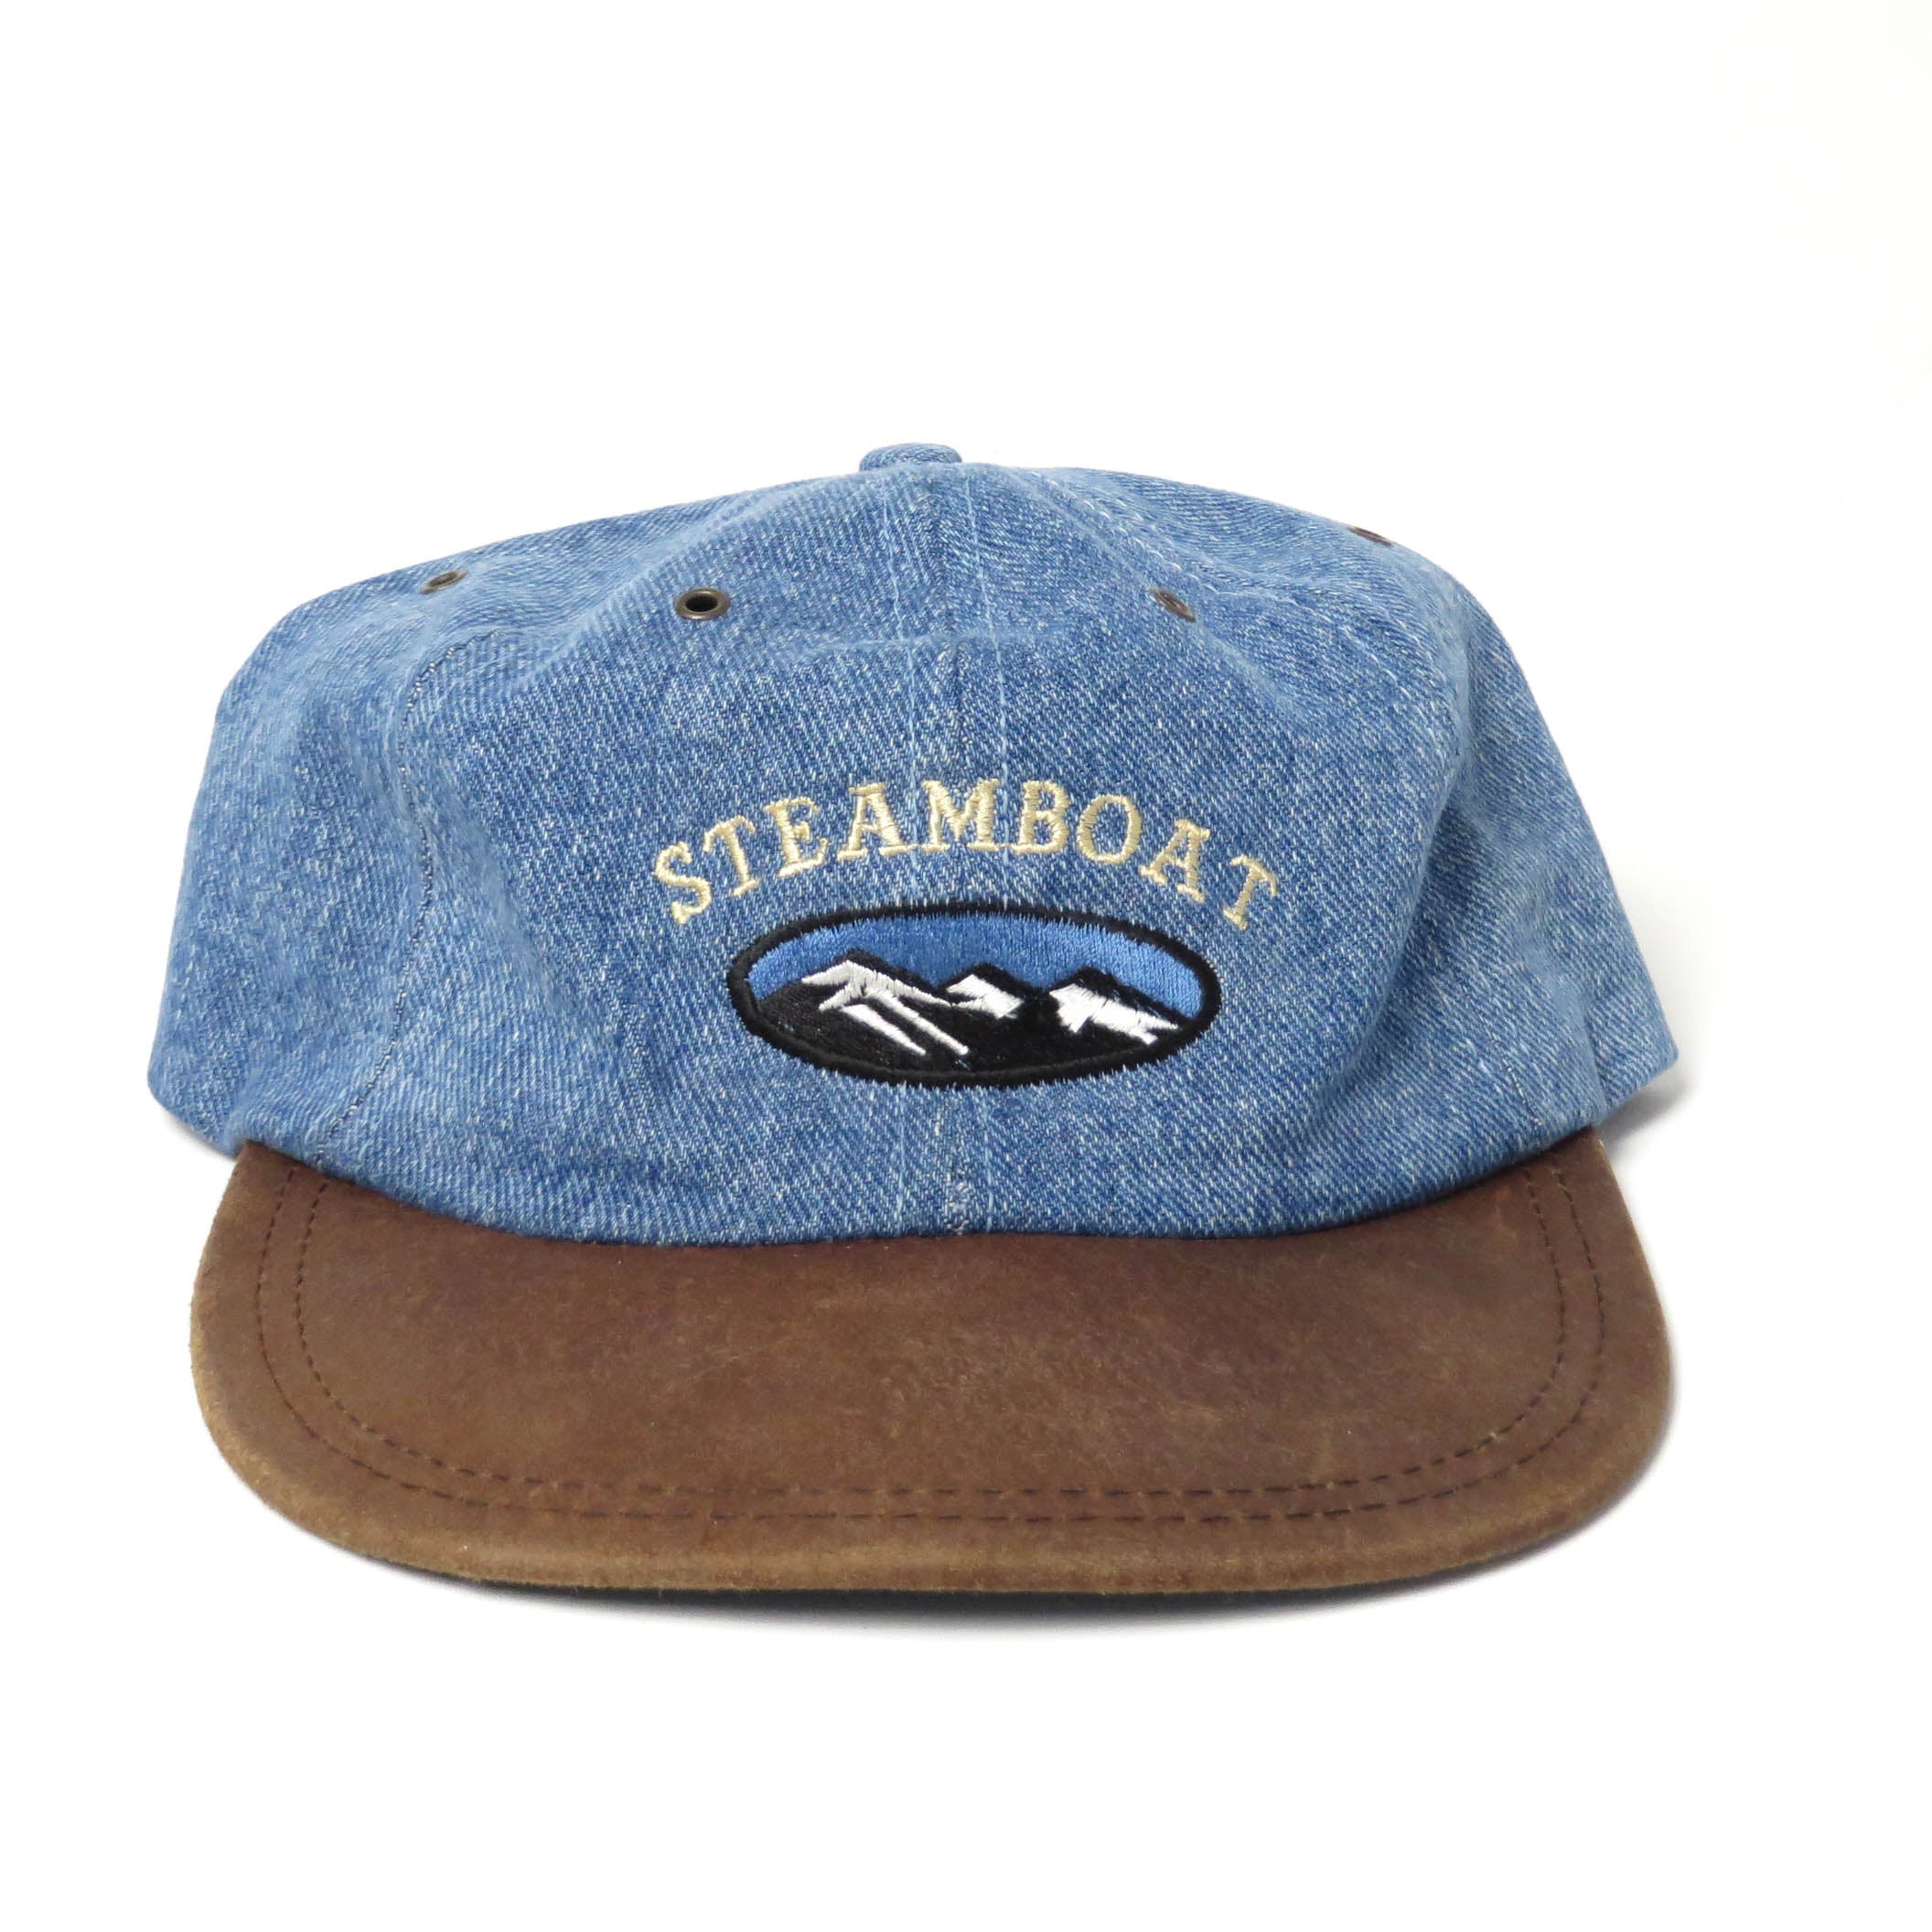 Vintage Steamboat Springs Denim/Leather Strapback Hat